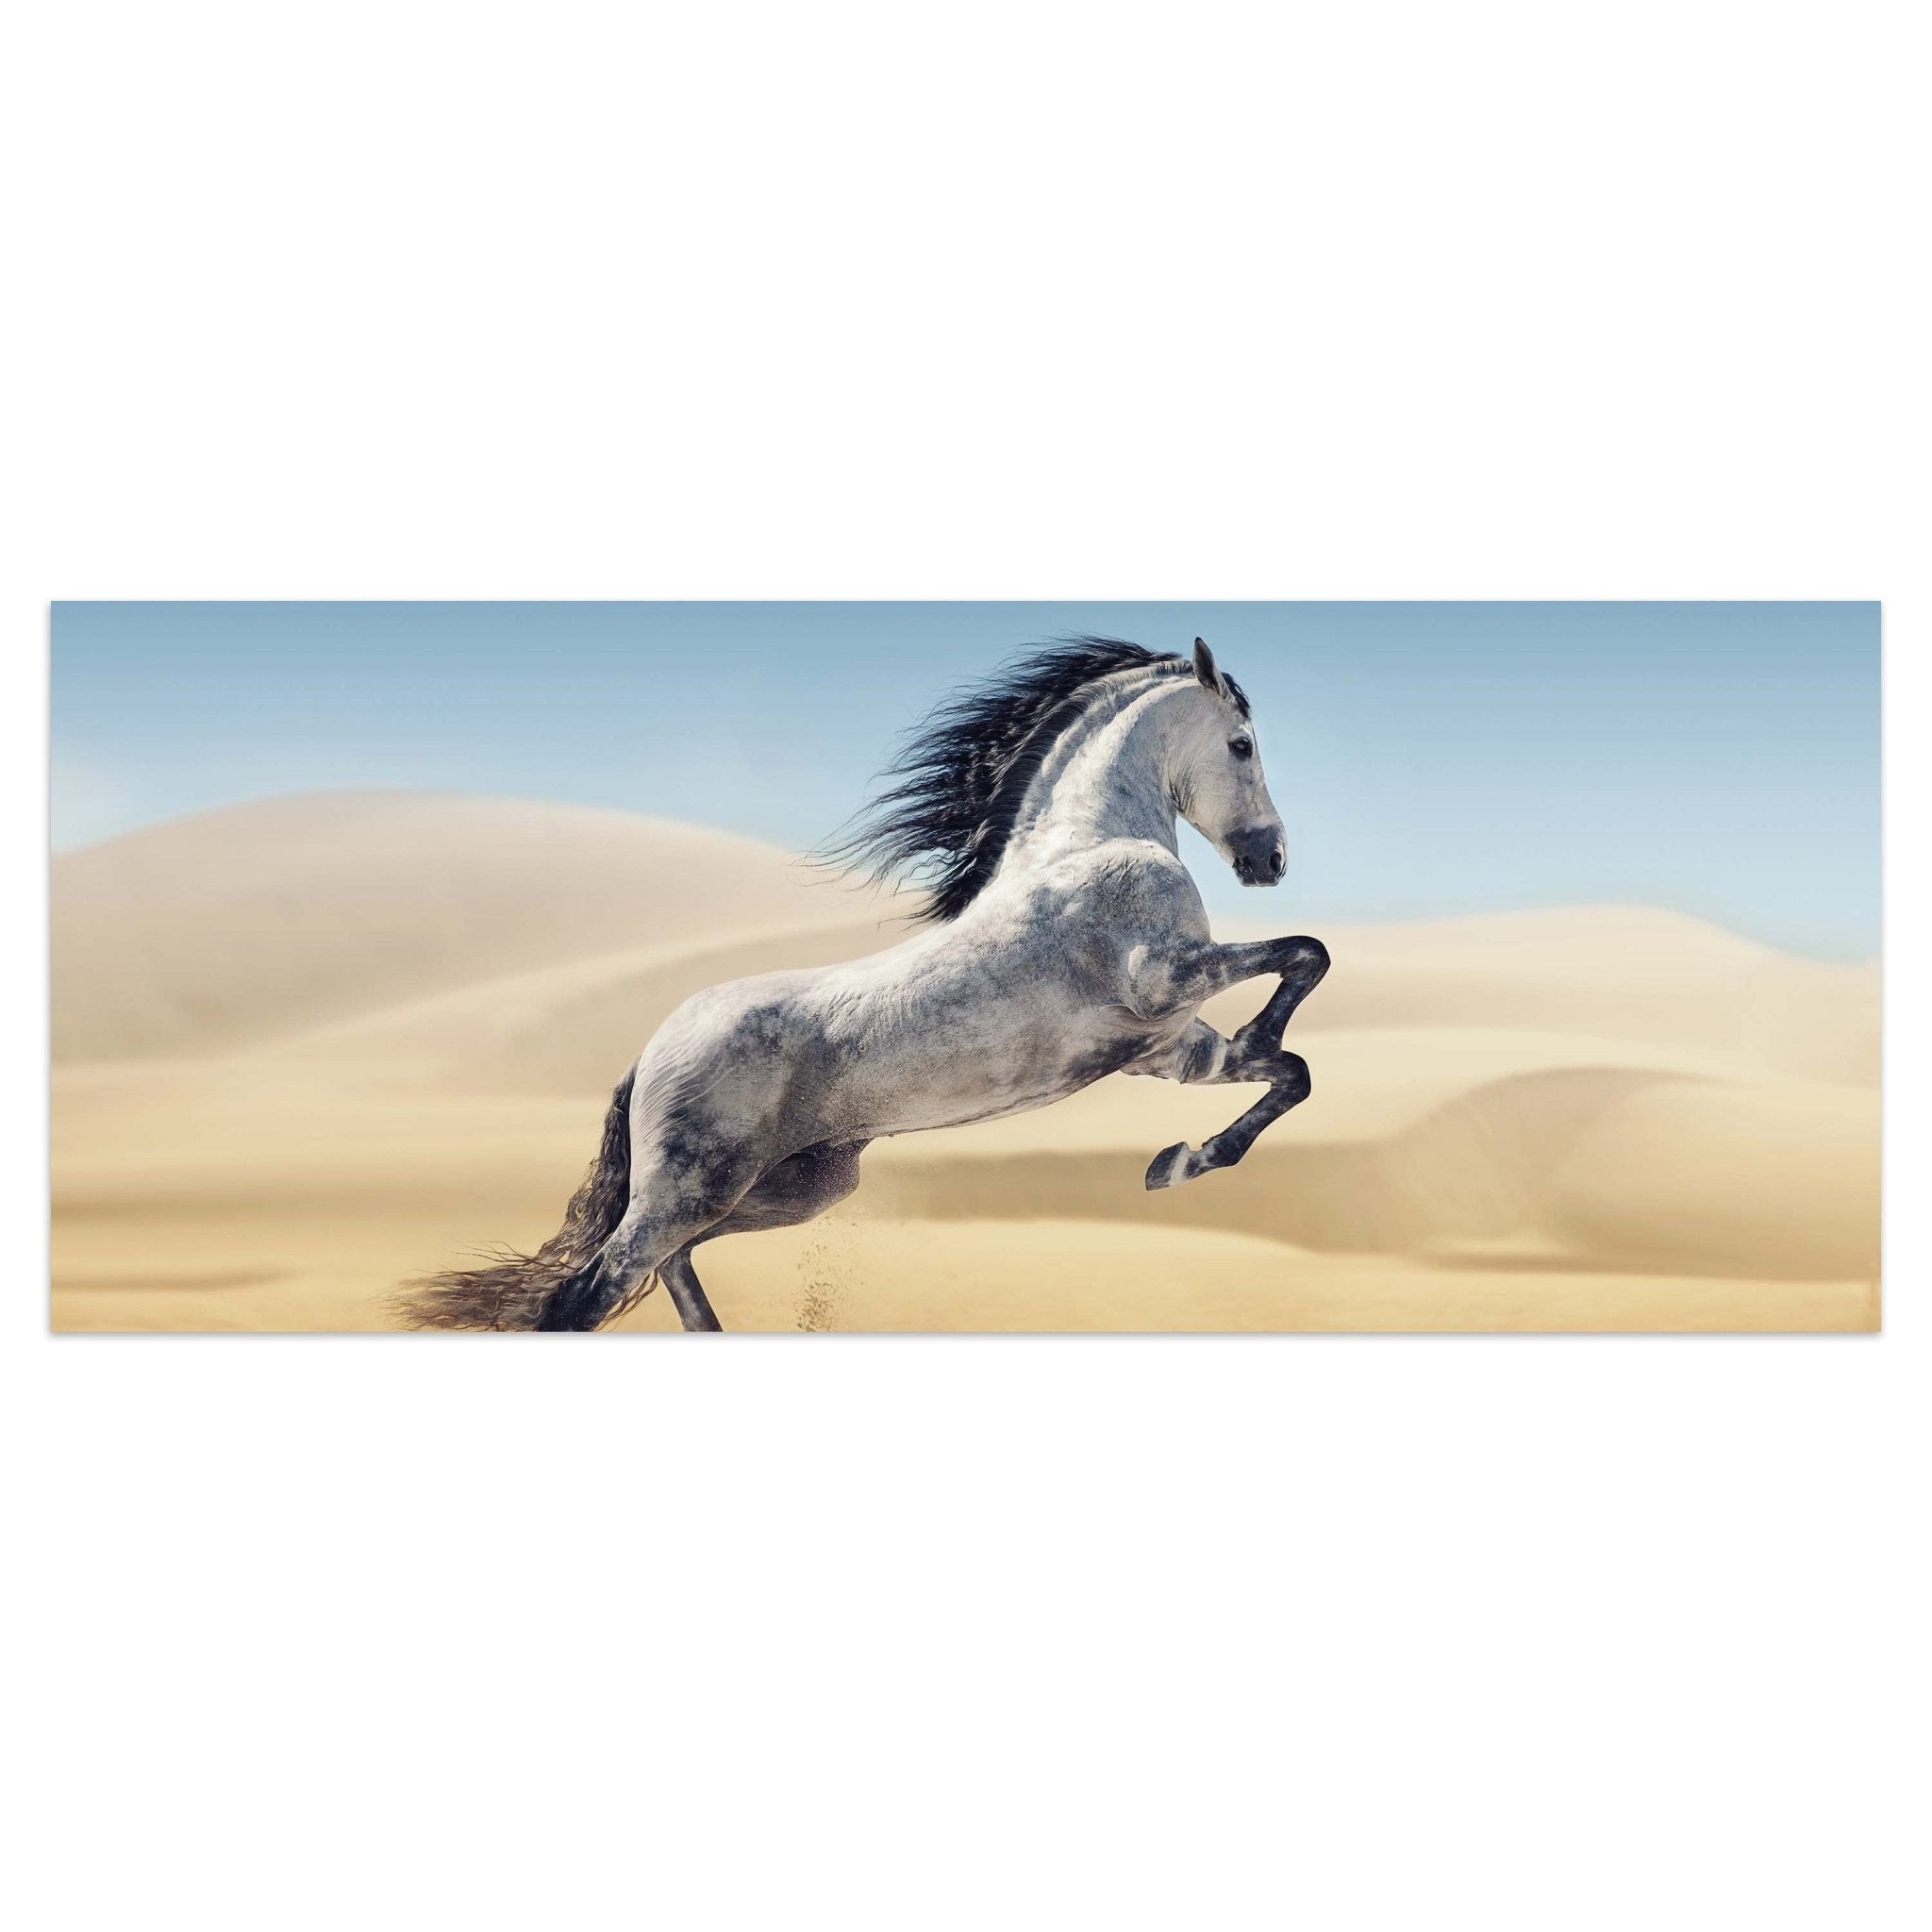 Leinwandbild Pferd, weiß, grau, Sand, Wüste M1110 kaufen - Bild 1